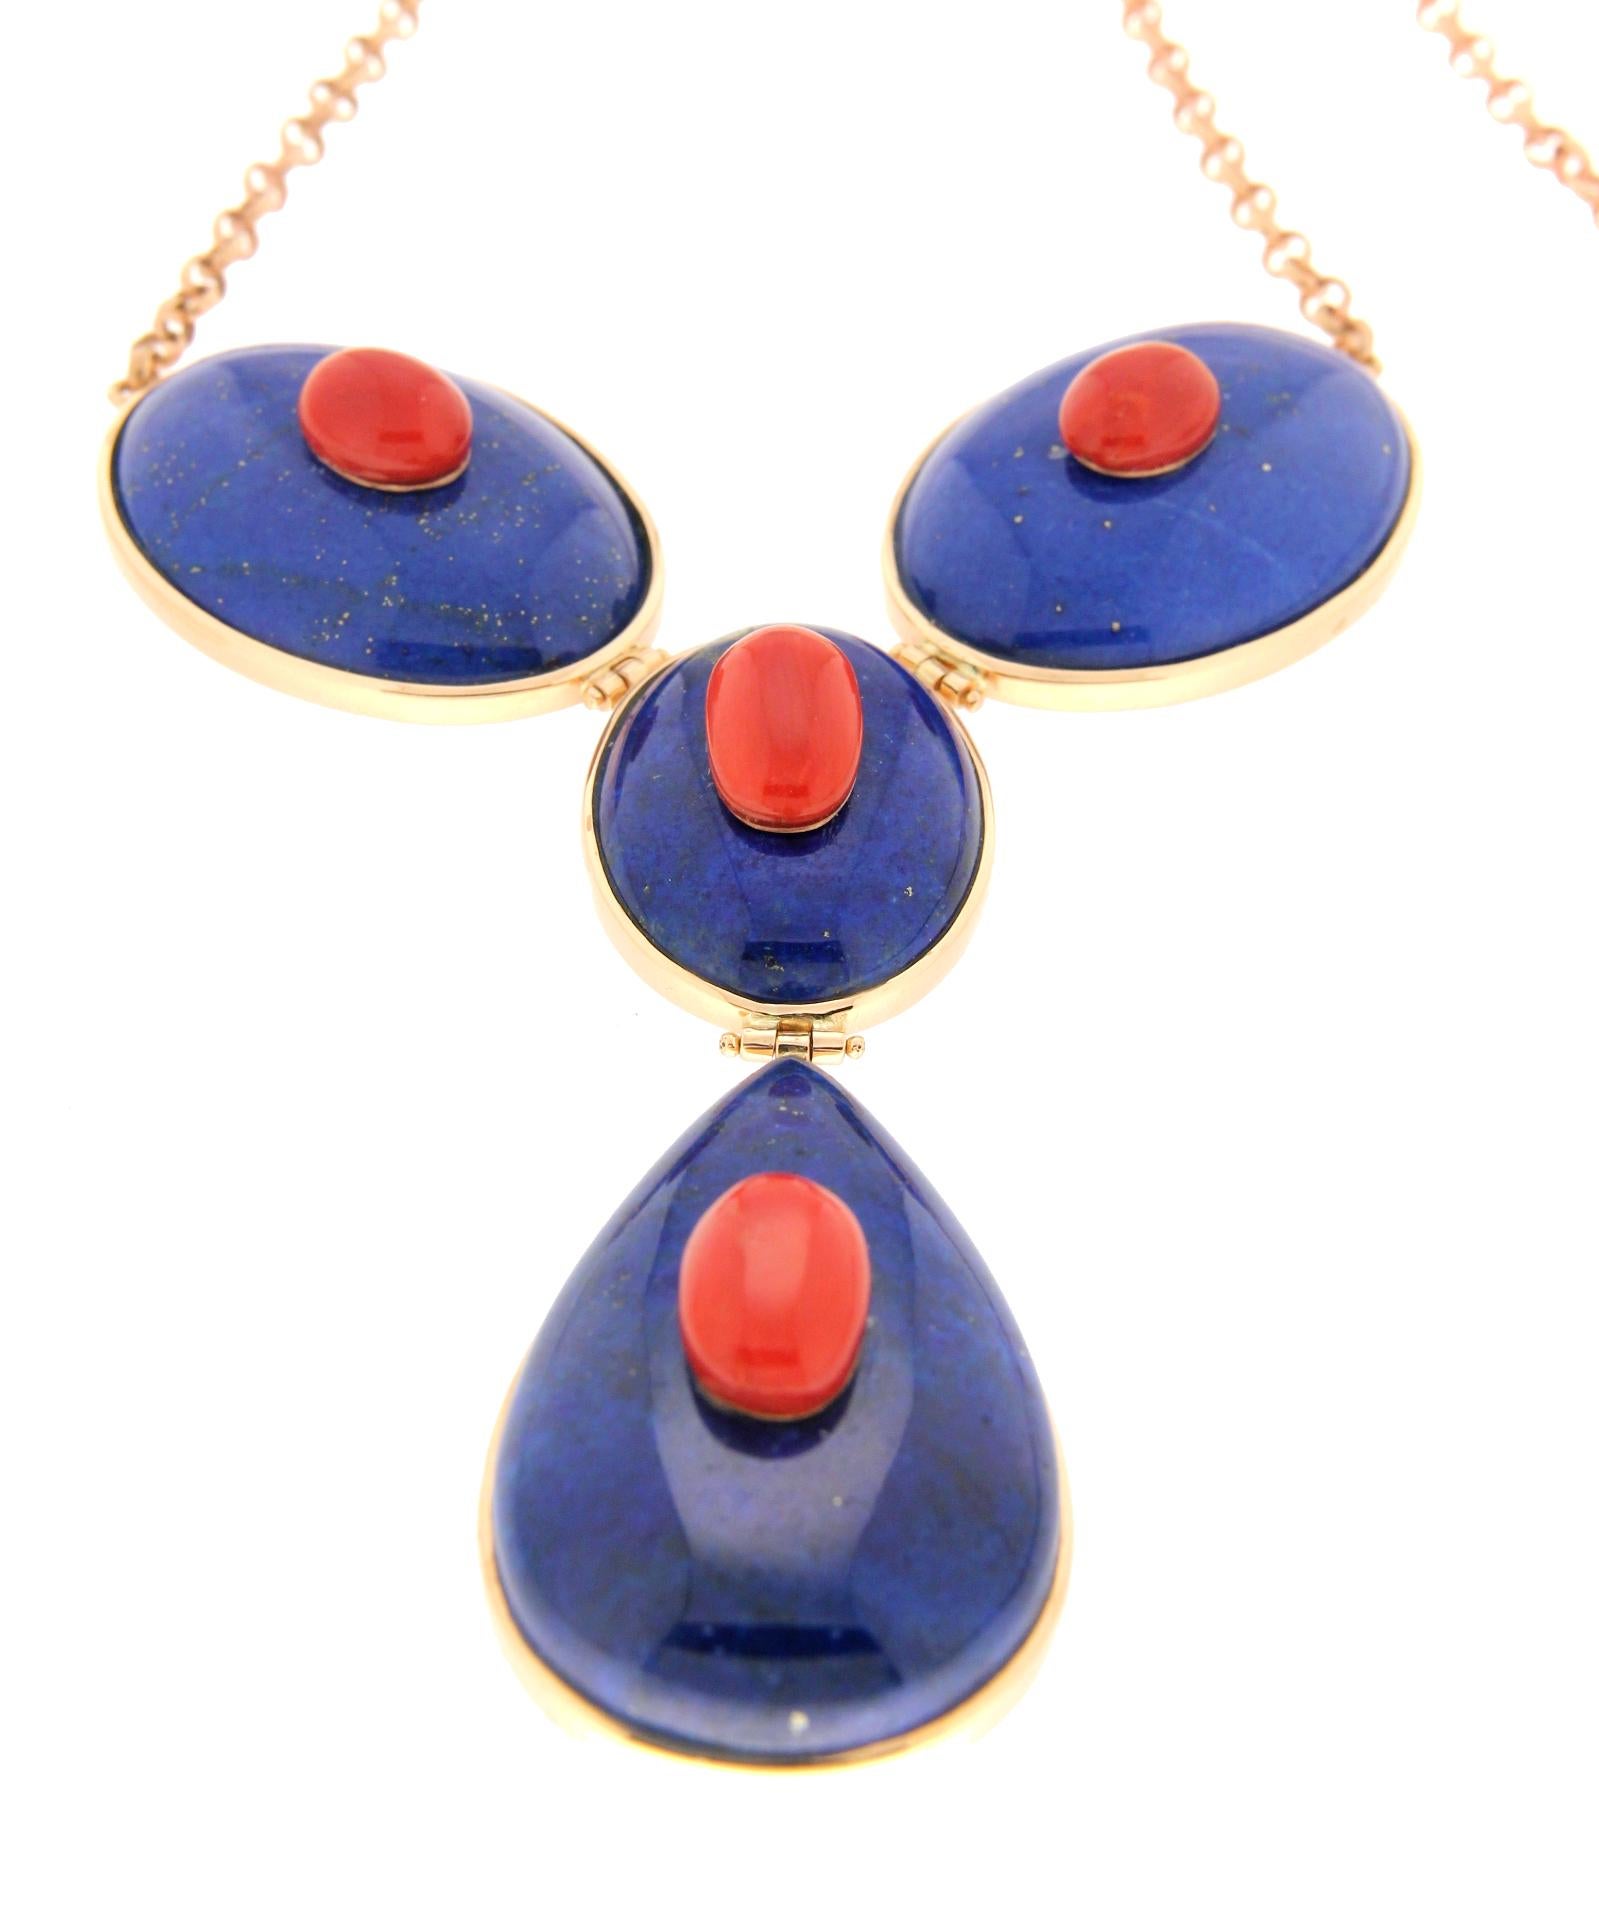 Handgefertigte Halskette mit Lapislazuli 14 Karat Gelbgold und sardischer Koralle als Anhänger für Damen oder Herren im Angebot